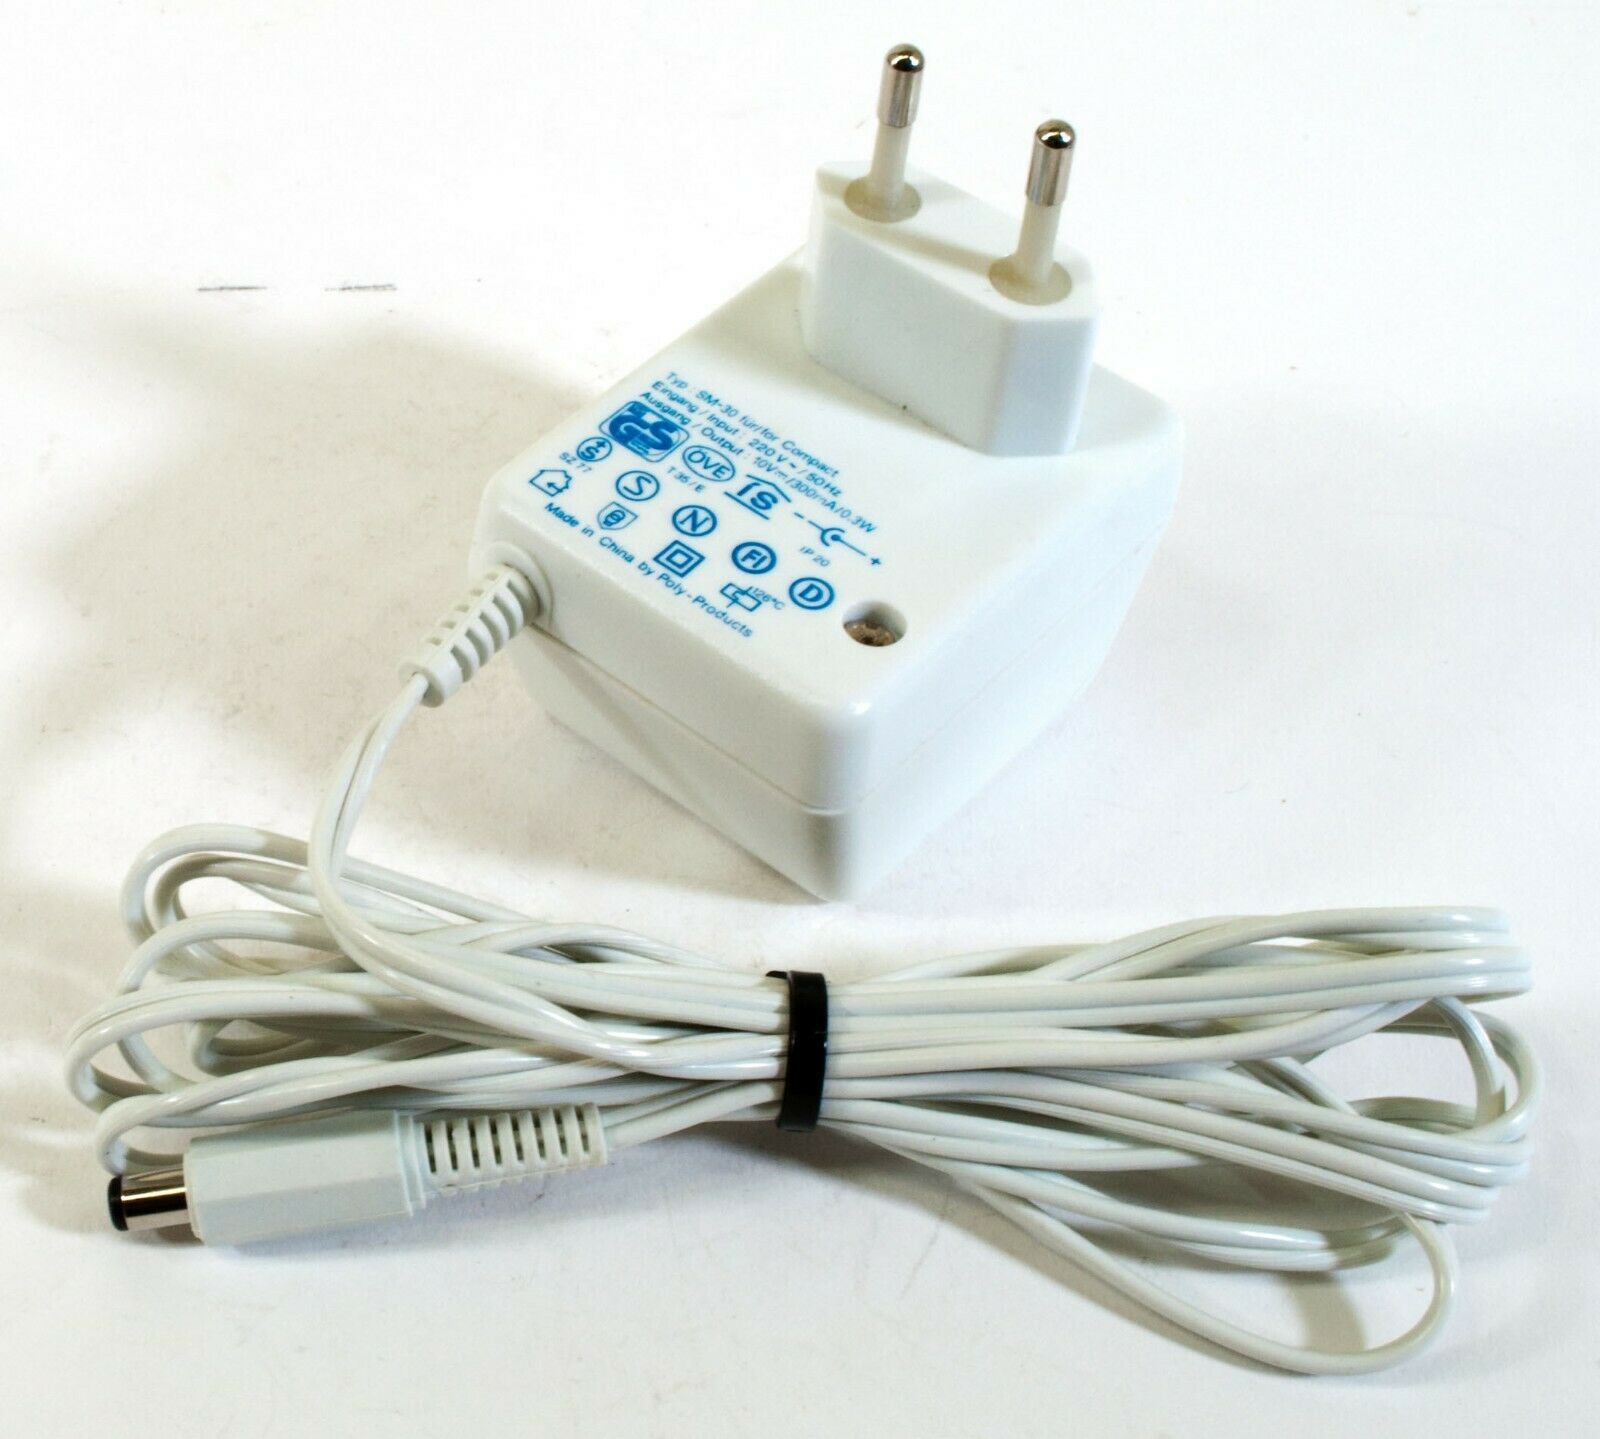 Epilady SM-30 AC Adapter 10V 300mA Original Power Supply Europlug Compact Output Current: 300 mA Voltage: 10 V MPN: